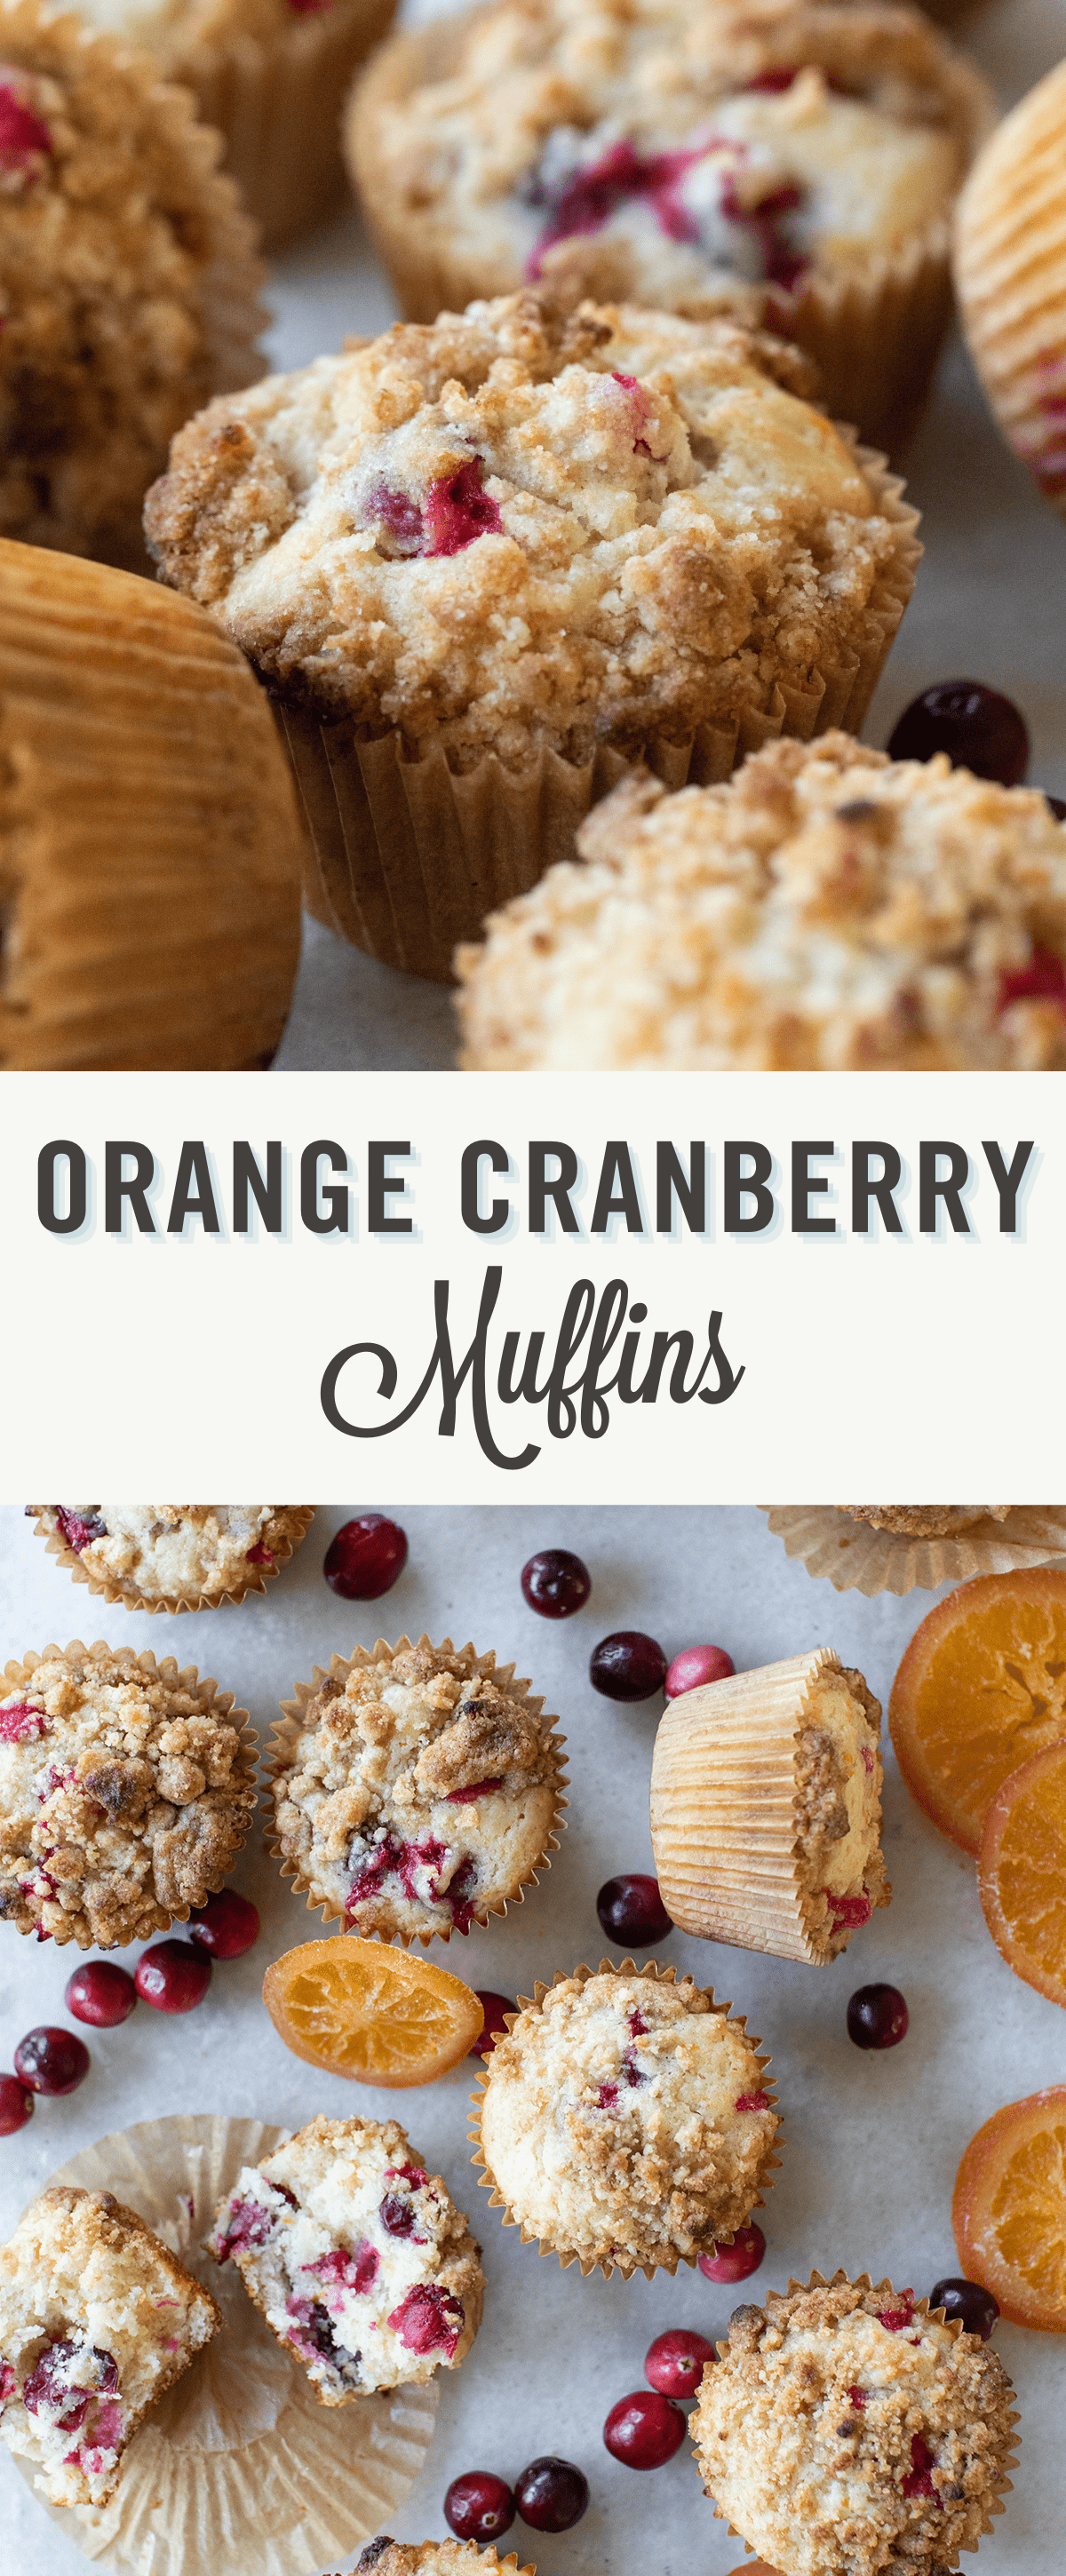 Cranberry orange muffin recipe.